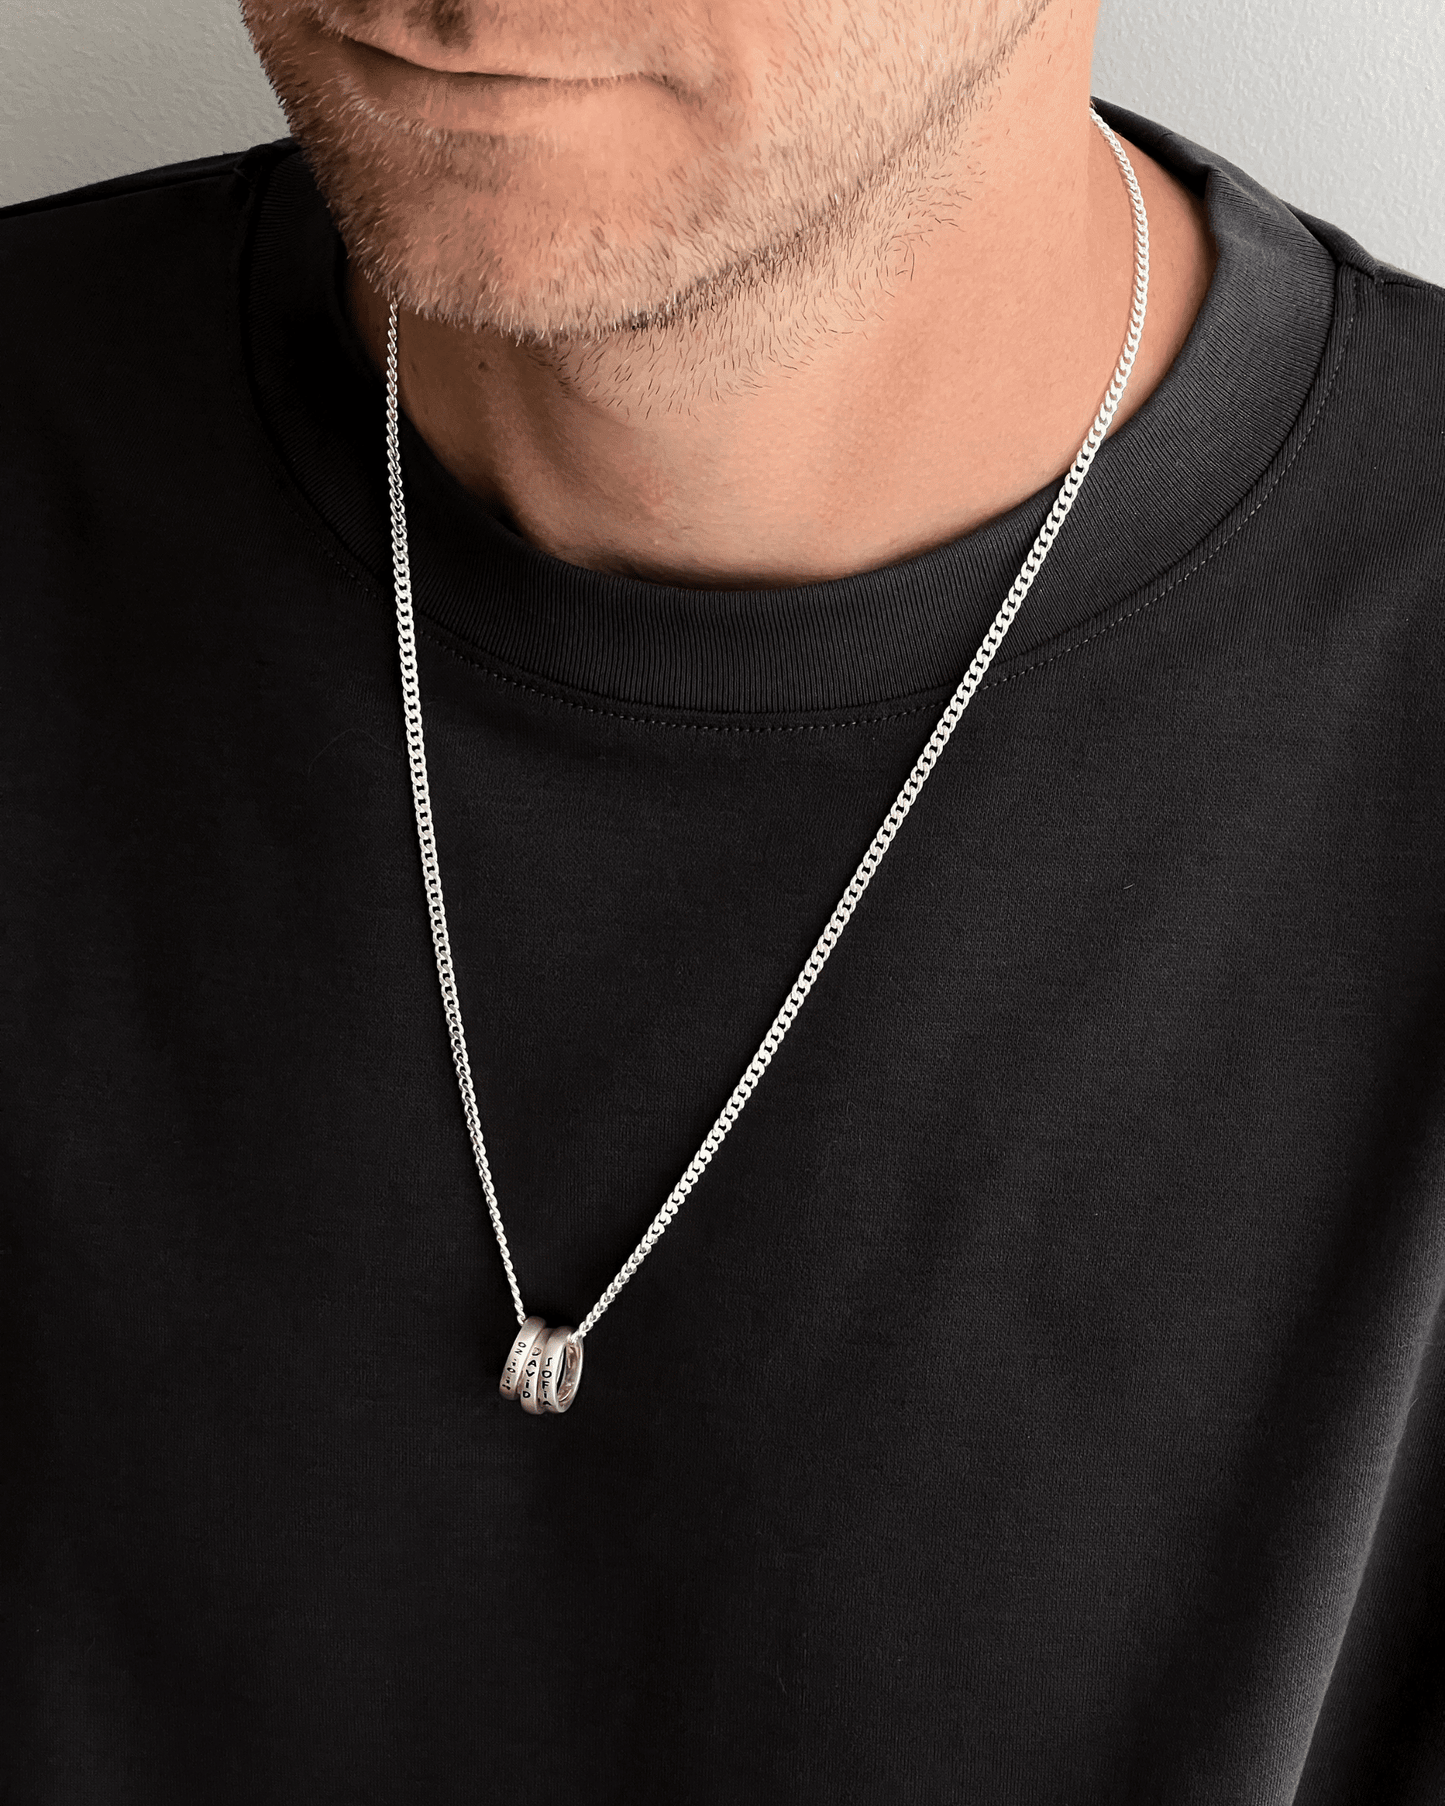 Collier Les miens - Argent 925 Necklaces magal-dev 